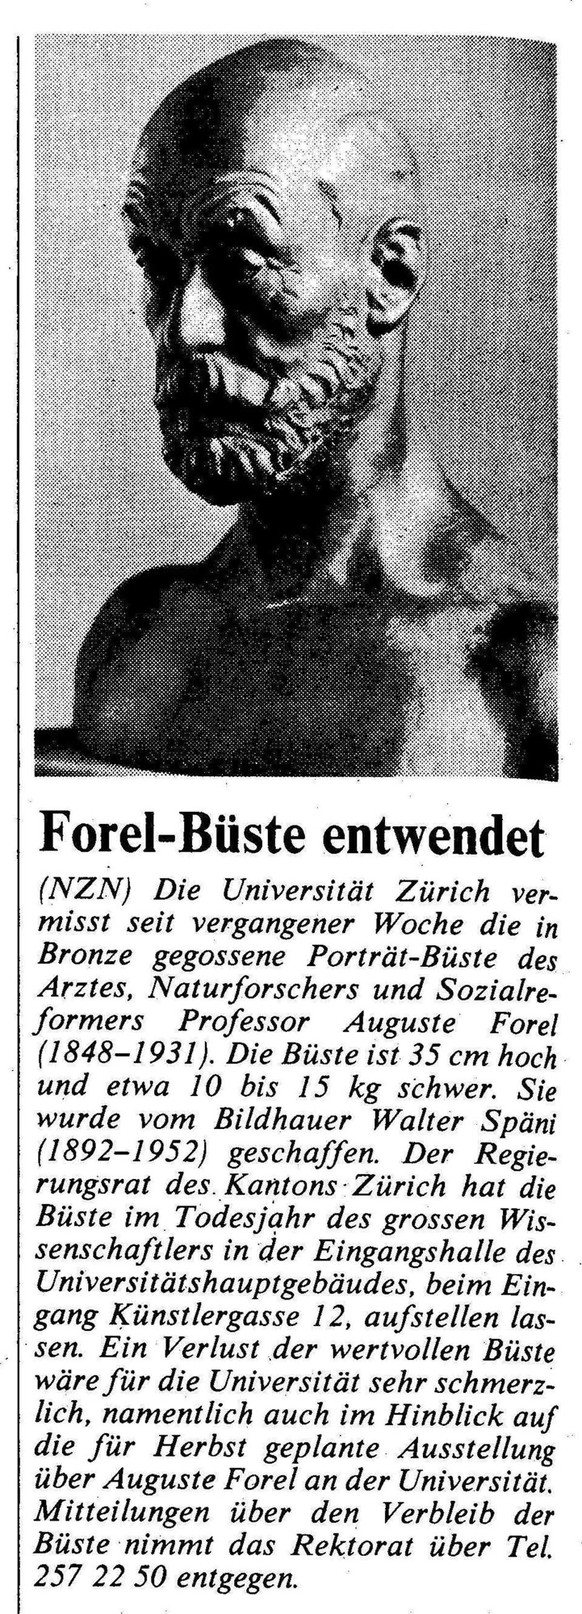 Die Neuen Zürcher Nachrichten berichteten am 31. Mai 1986 über das Verschwinden der Büste. Das «Signalement» war allerdings ungenau...
https://www.e-newspaperarchives.ch/?a=d&amp;d=NZN19860531-01.2.9. ...